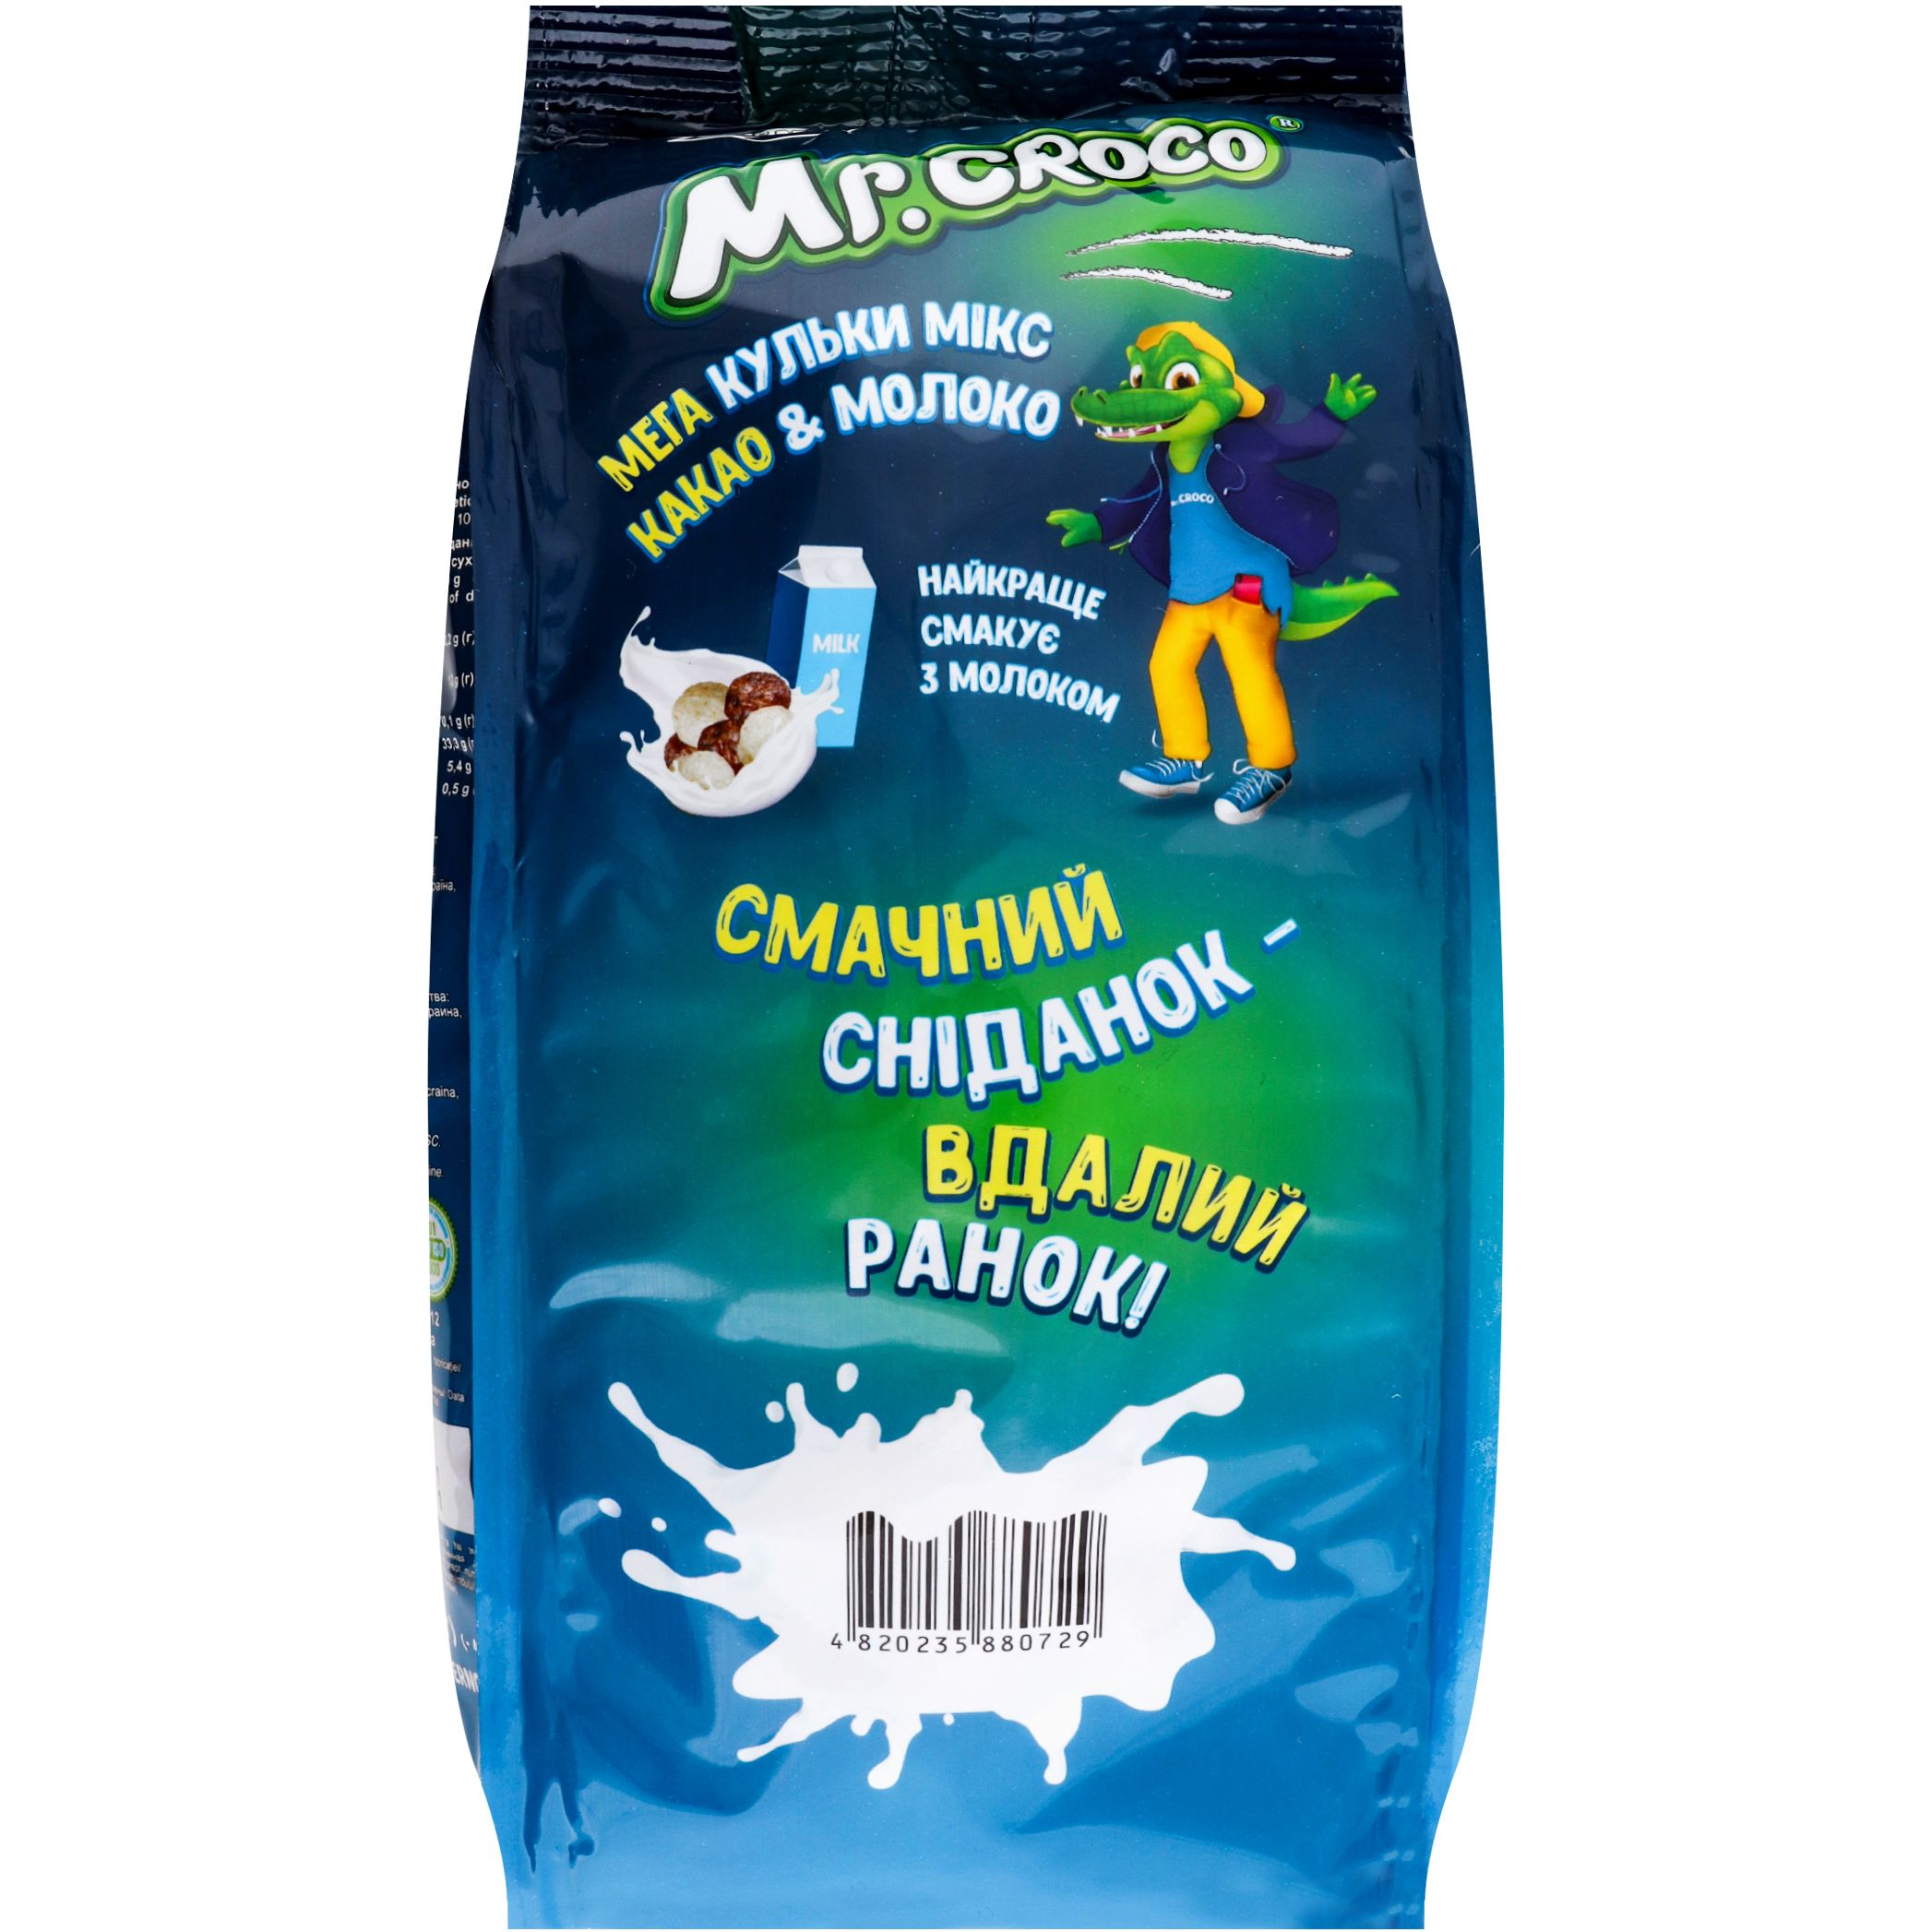 Кульки Mr. Croco Mega мікс з какао і молоком 180 г (922184) - фото 2